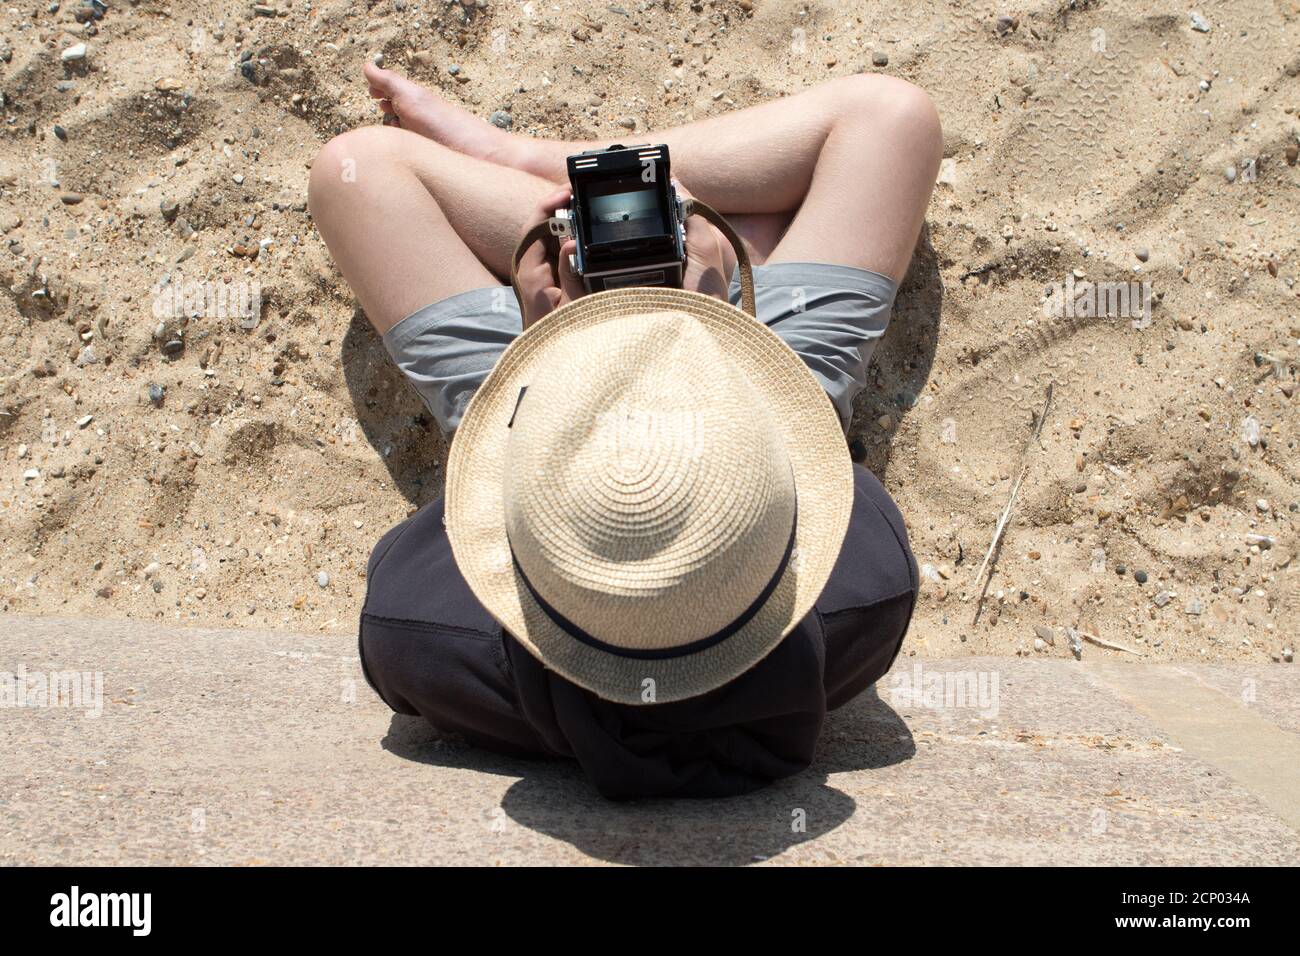 Un jeune homme adulte dans un chapeau de paille d'en haut Utilise un appareil photo reflex numérique Rolleiflex vintage pour cadrer un sujet dans une scène de plage dans le viseur Banque D'Images